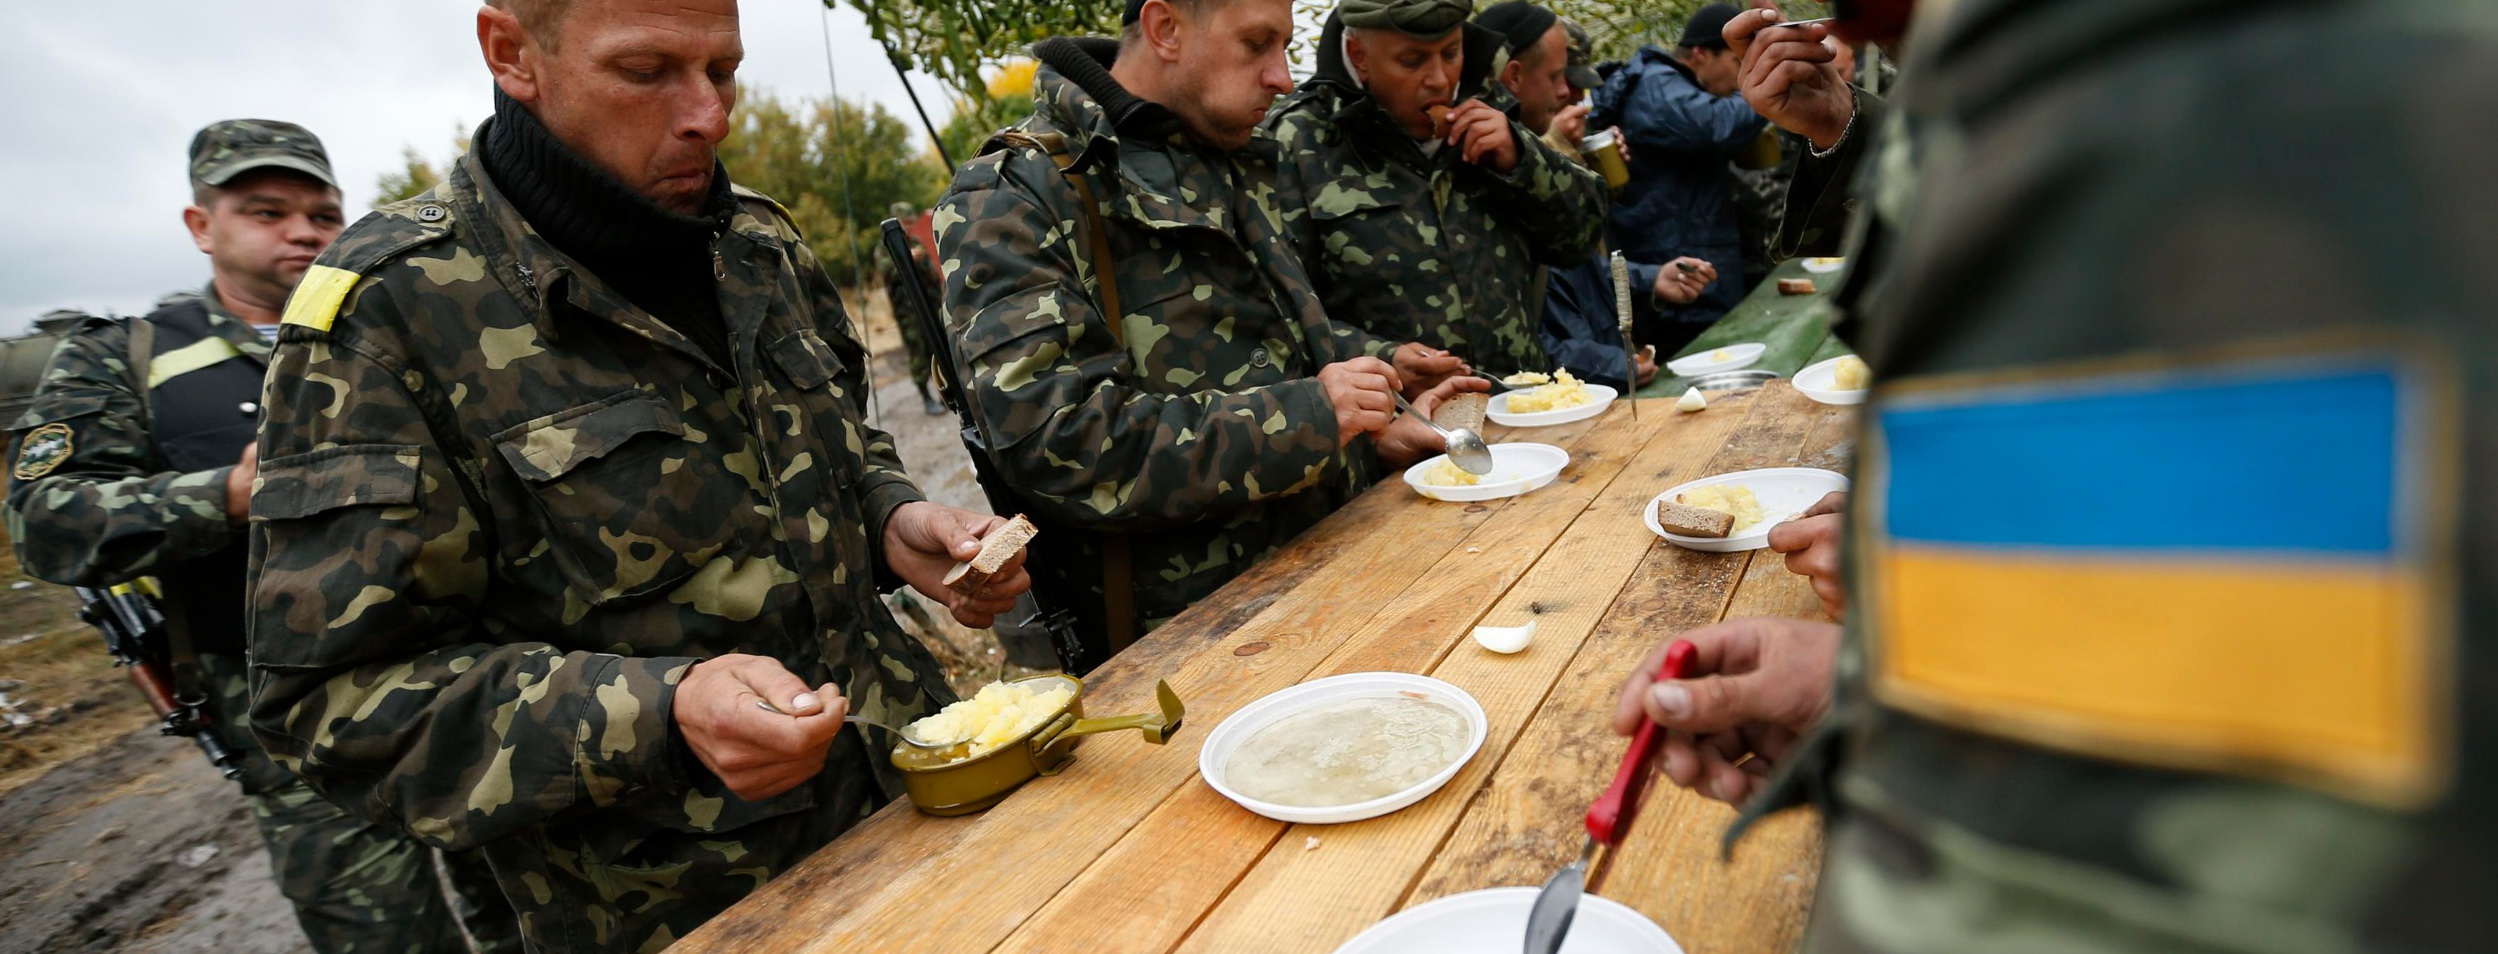 Украинской армии больше нет – есть лишь остатки подразделений